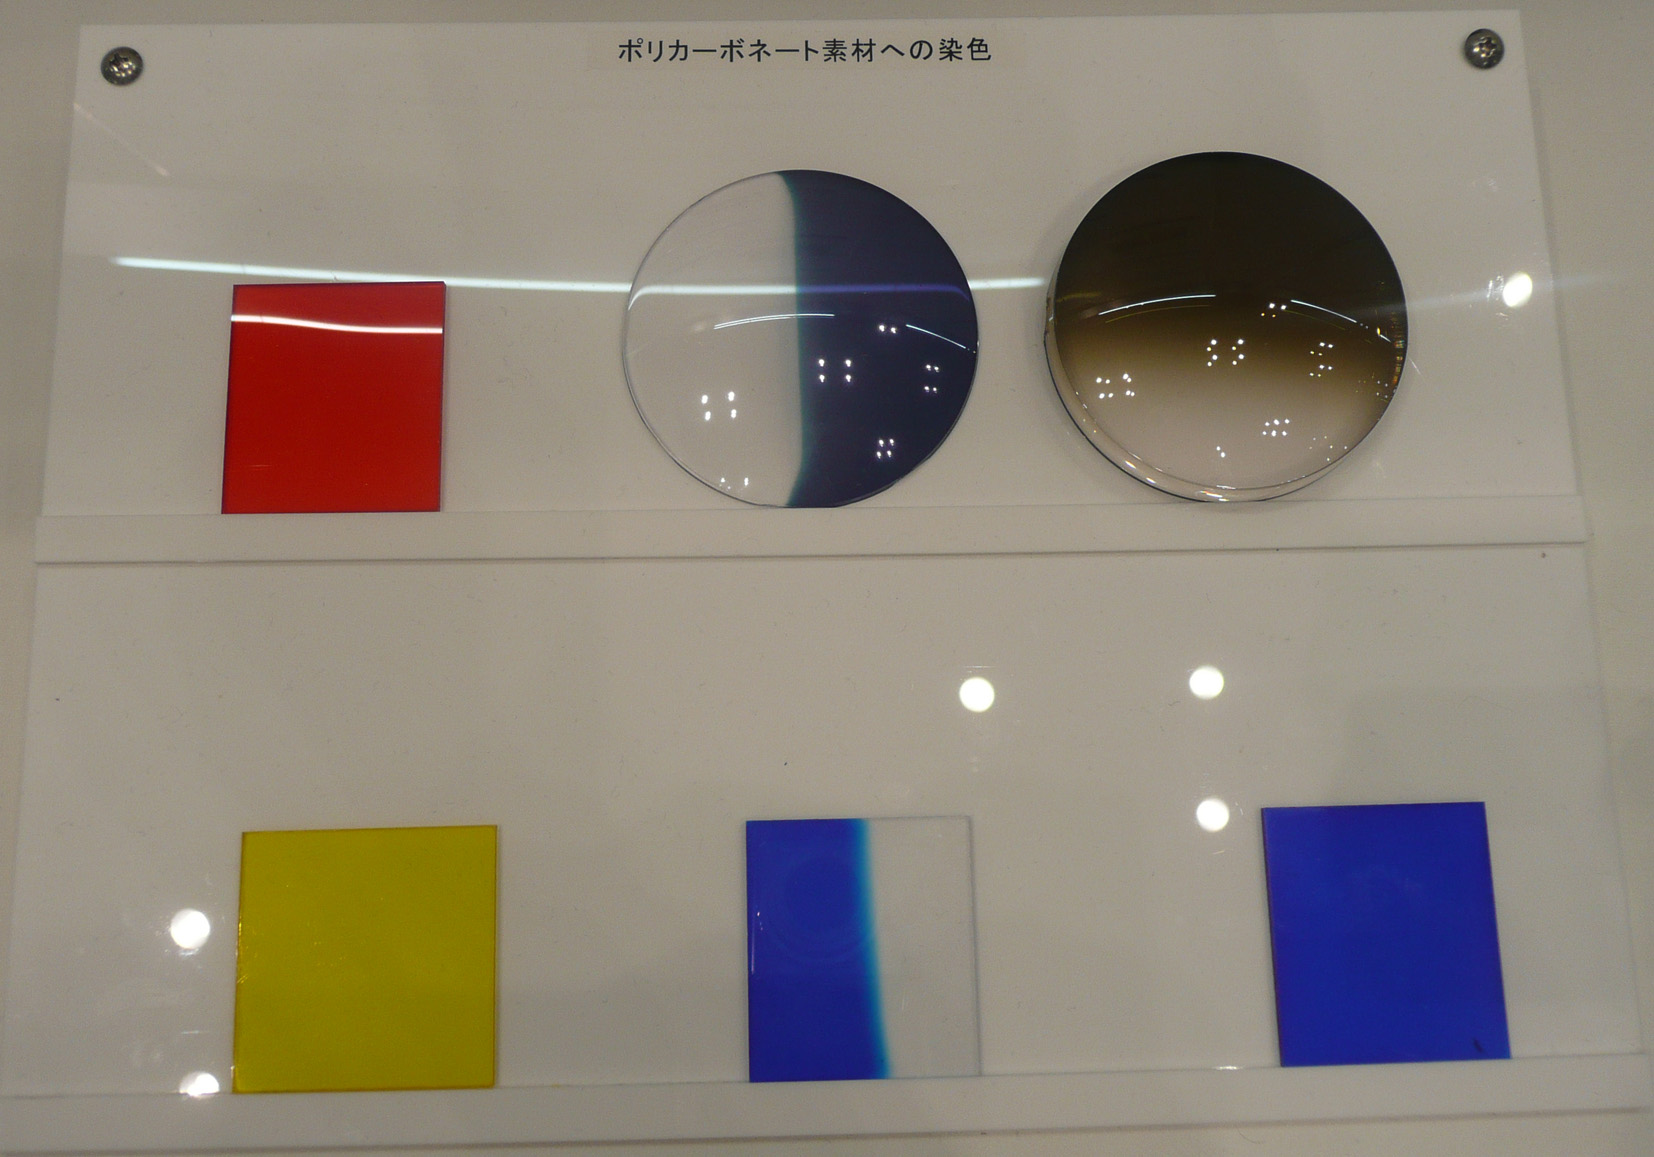 眼鏡プラスチックレンズの染色を可能にするレーザー装置を実用化へ ─ニデックが開発